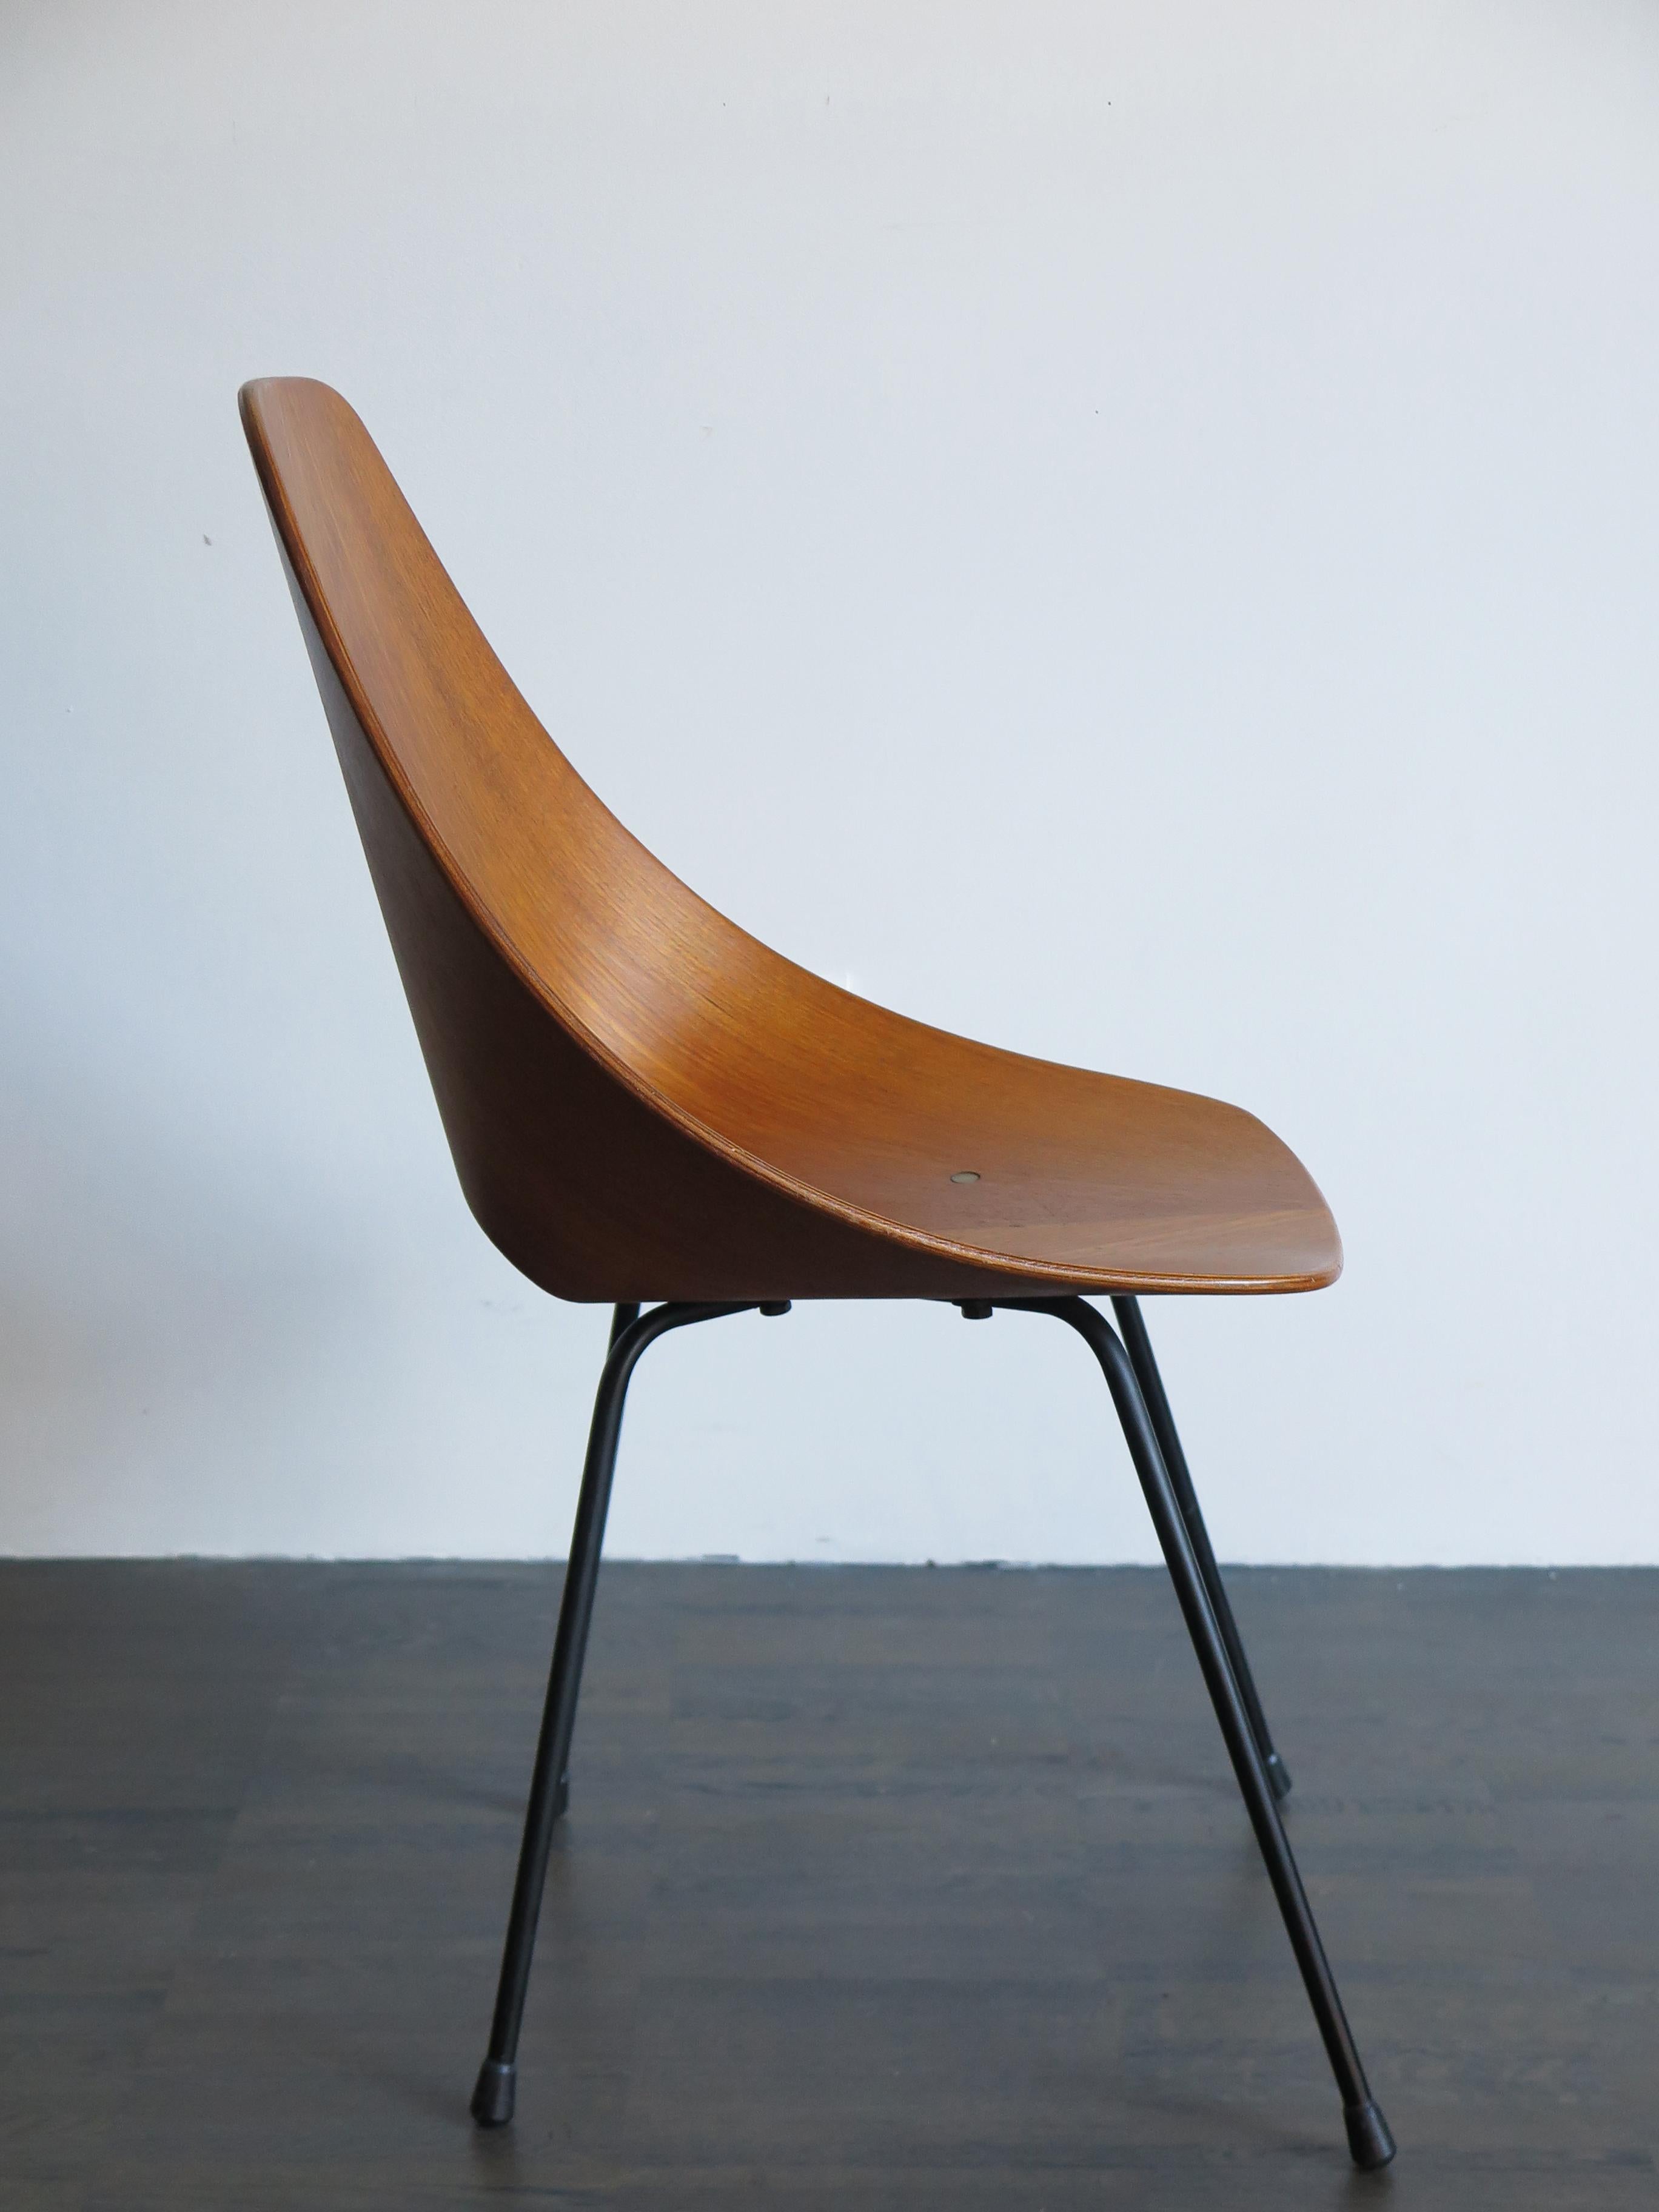 Vittorio Nobili Italian Wood Medea Chairs for Fratelli Tagliabue, 1950s For Sale 3